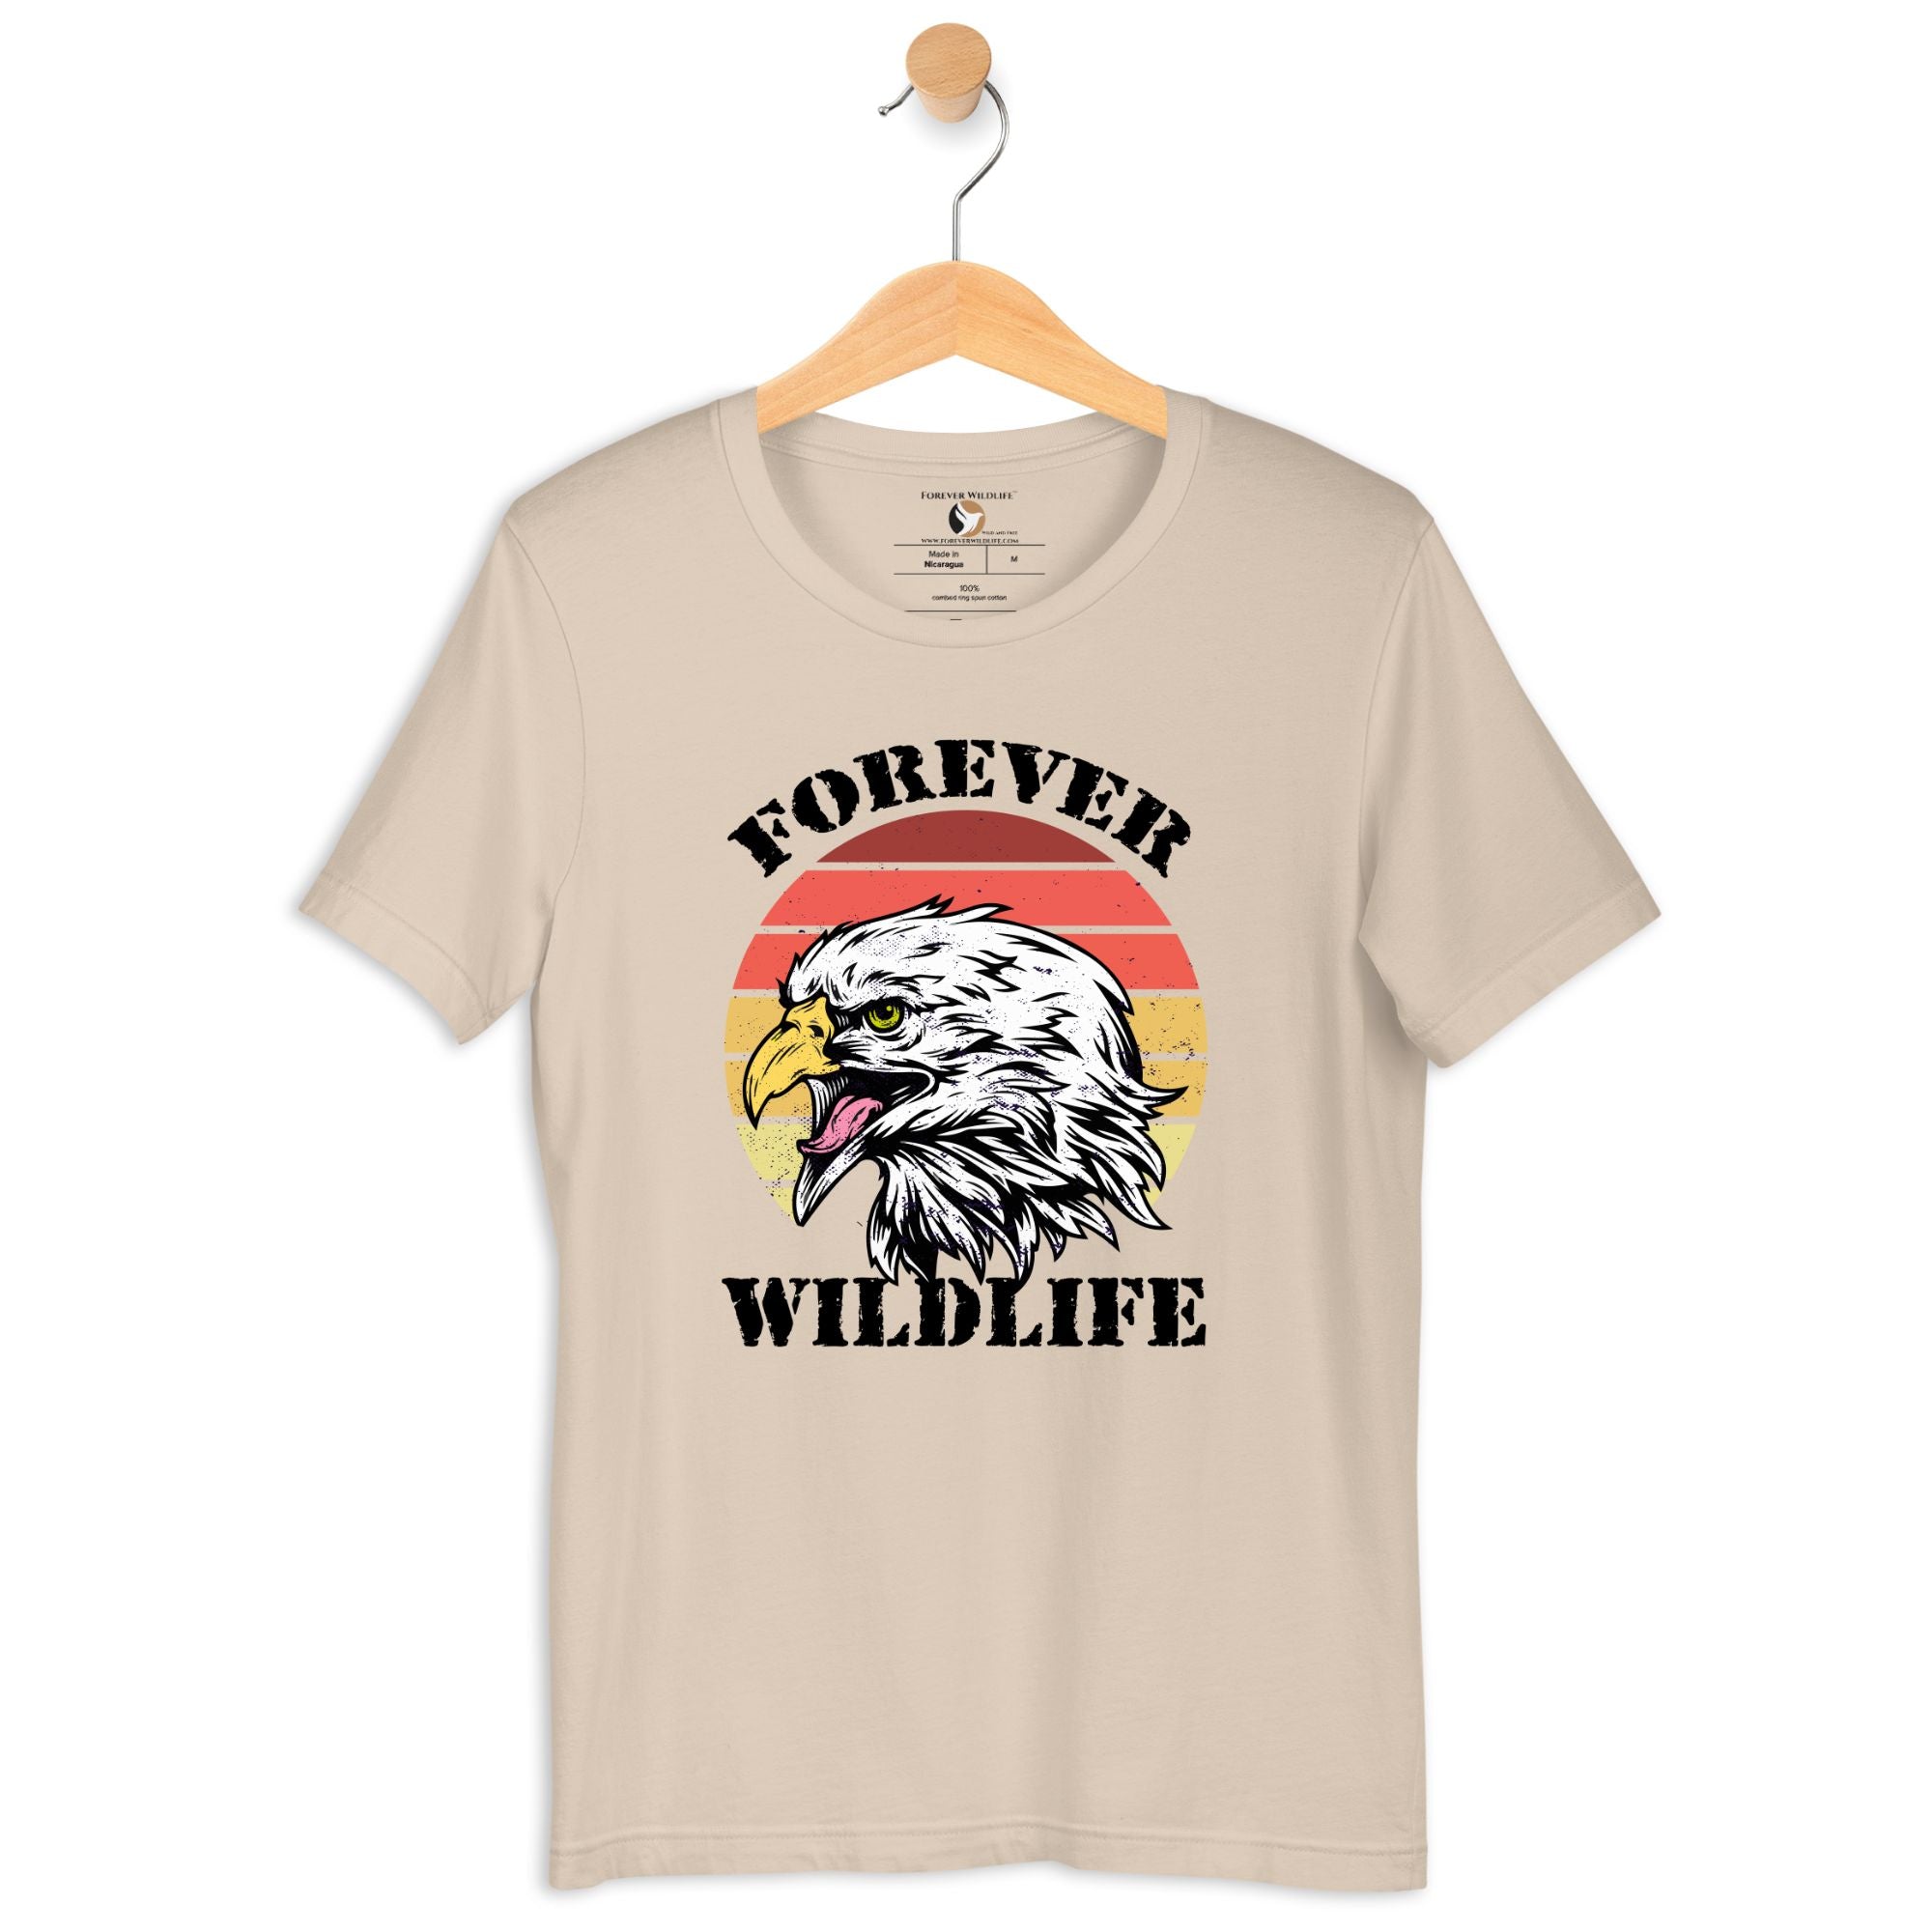 Eagle T-Shirt in Soft Cream – Premium Wildlife T-Shirt Design, Eagle Shirts and Wildlife Clothing from Forever Wildlife